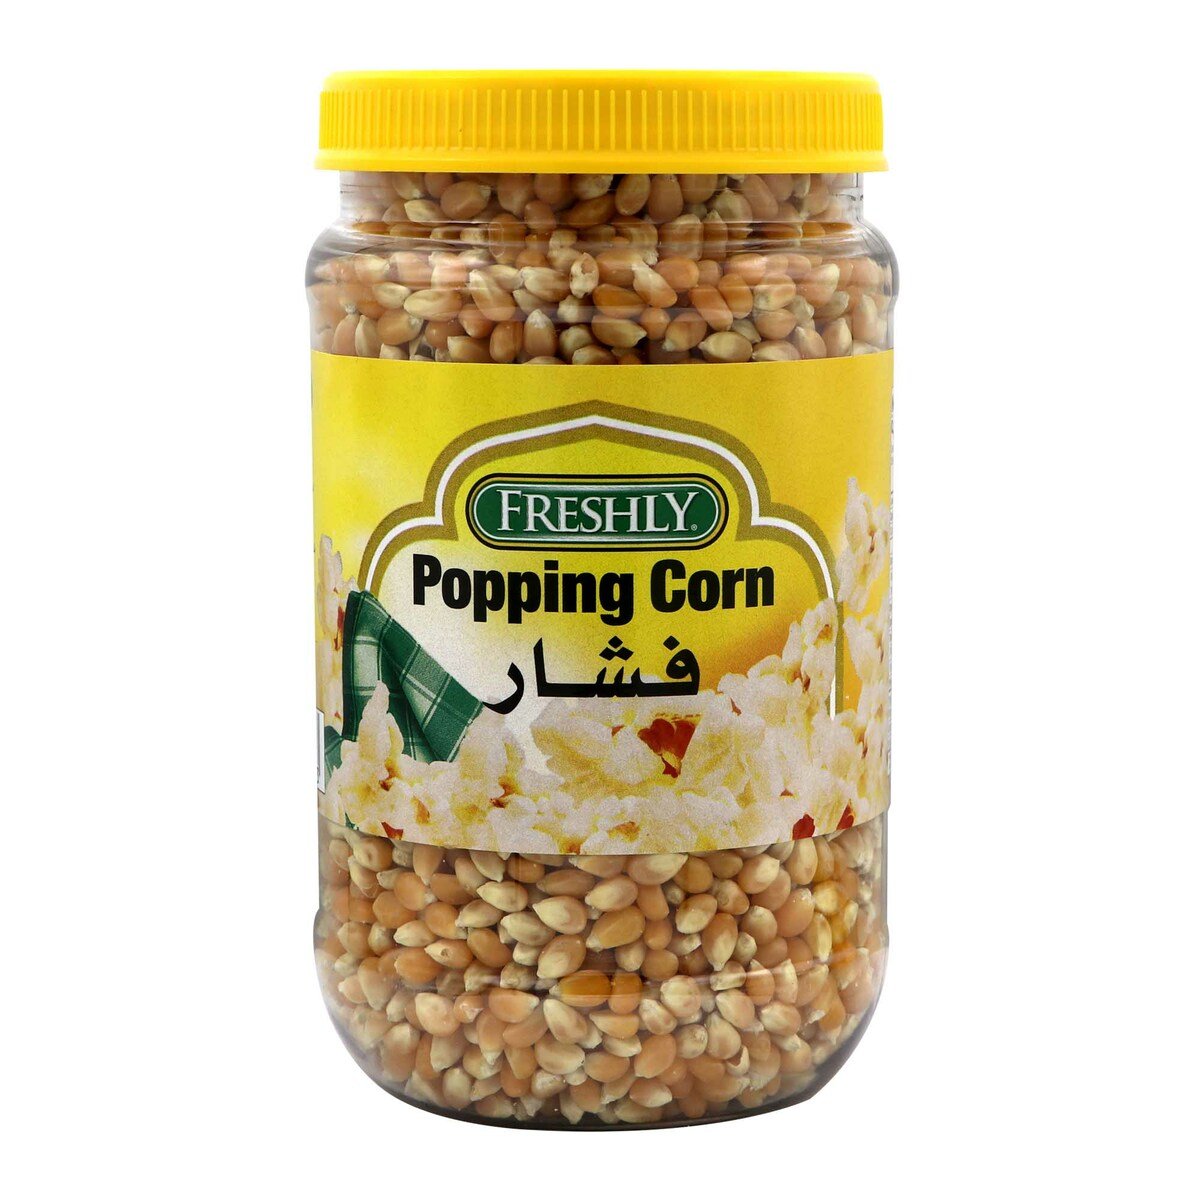 Buy Freshly Popping Corn 32oz Online at Best Price | Pop Corn | Lulu KSA in Saudi Arabia